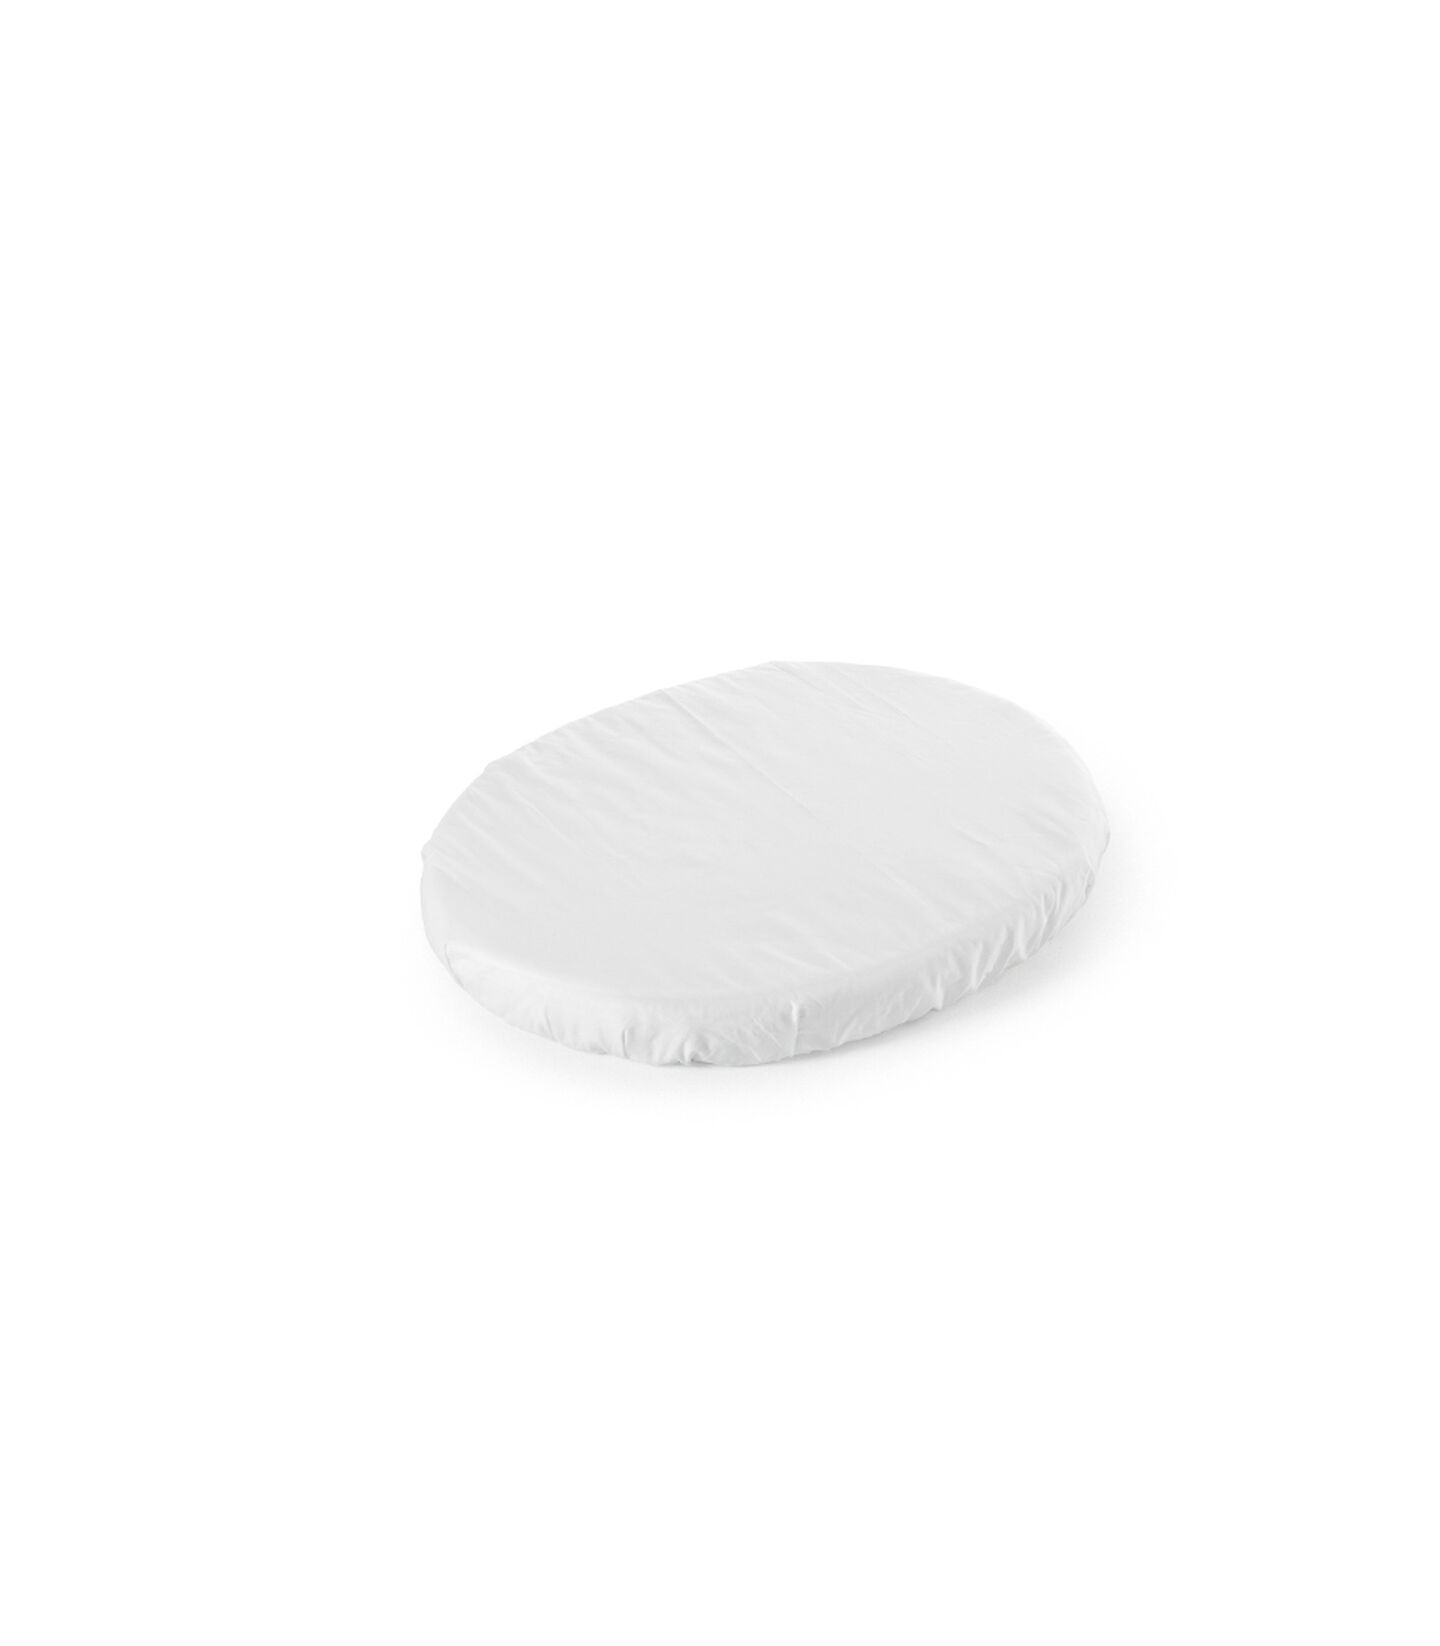 Stokke® Sleepi™ Mini Formsydd Laken White, White, mainview view 1